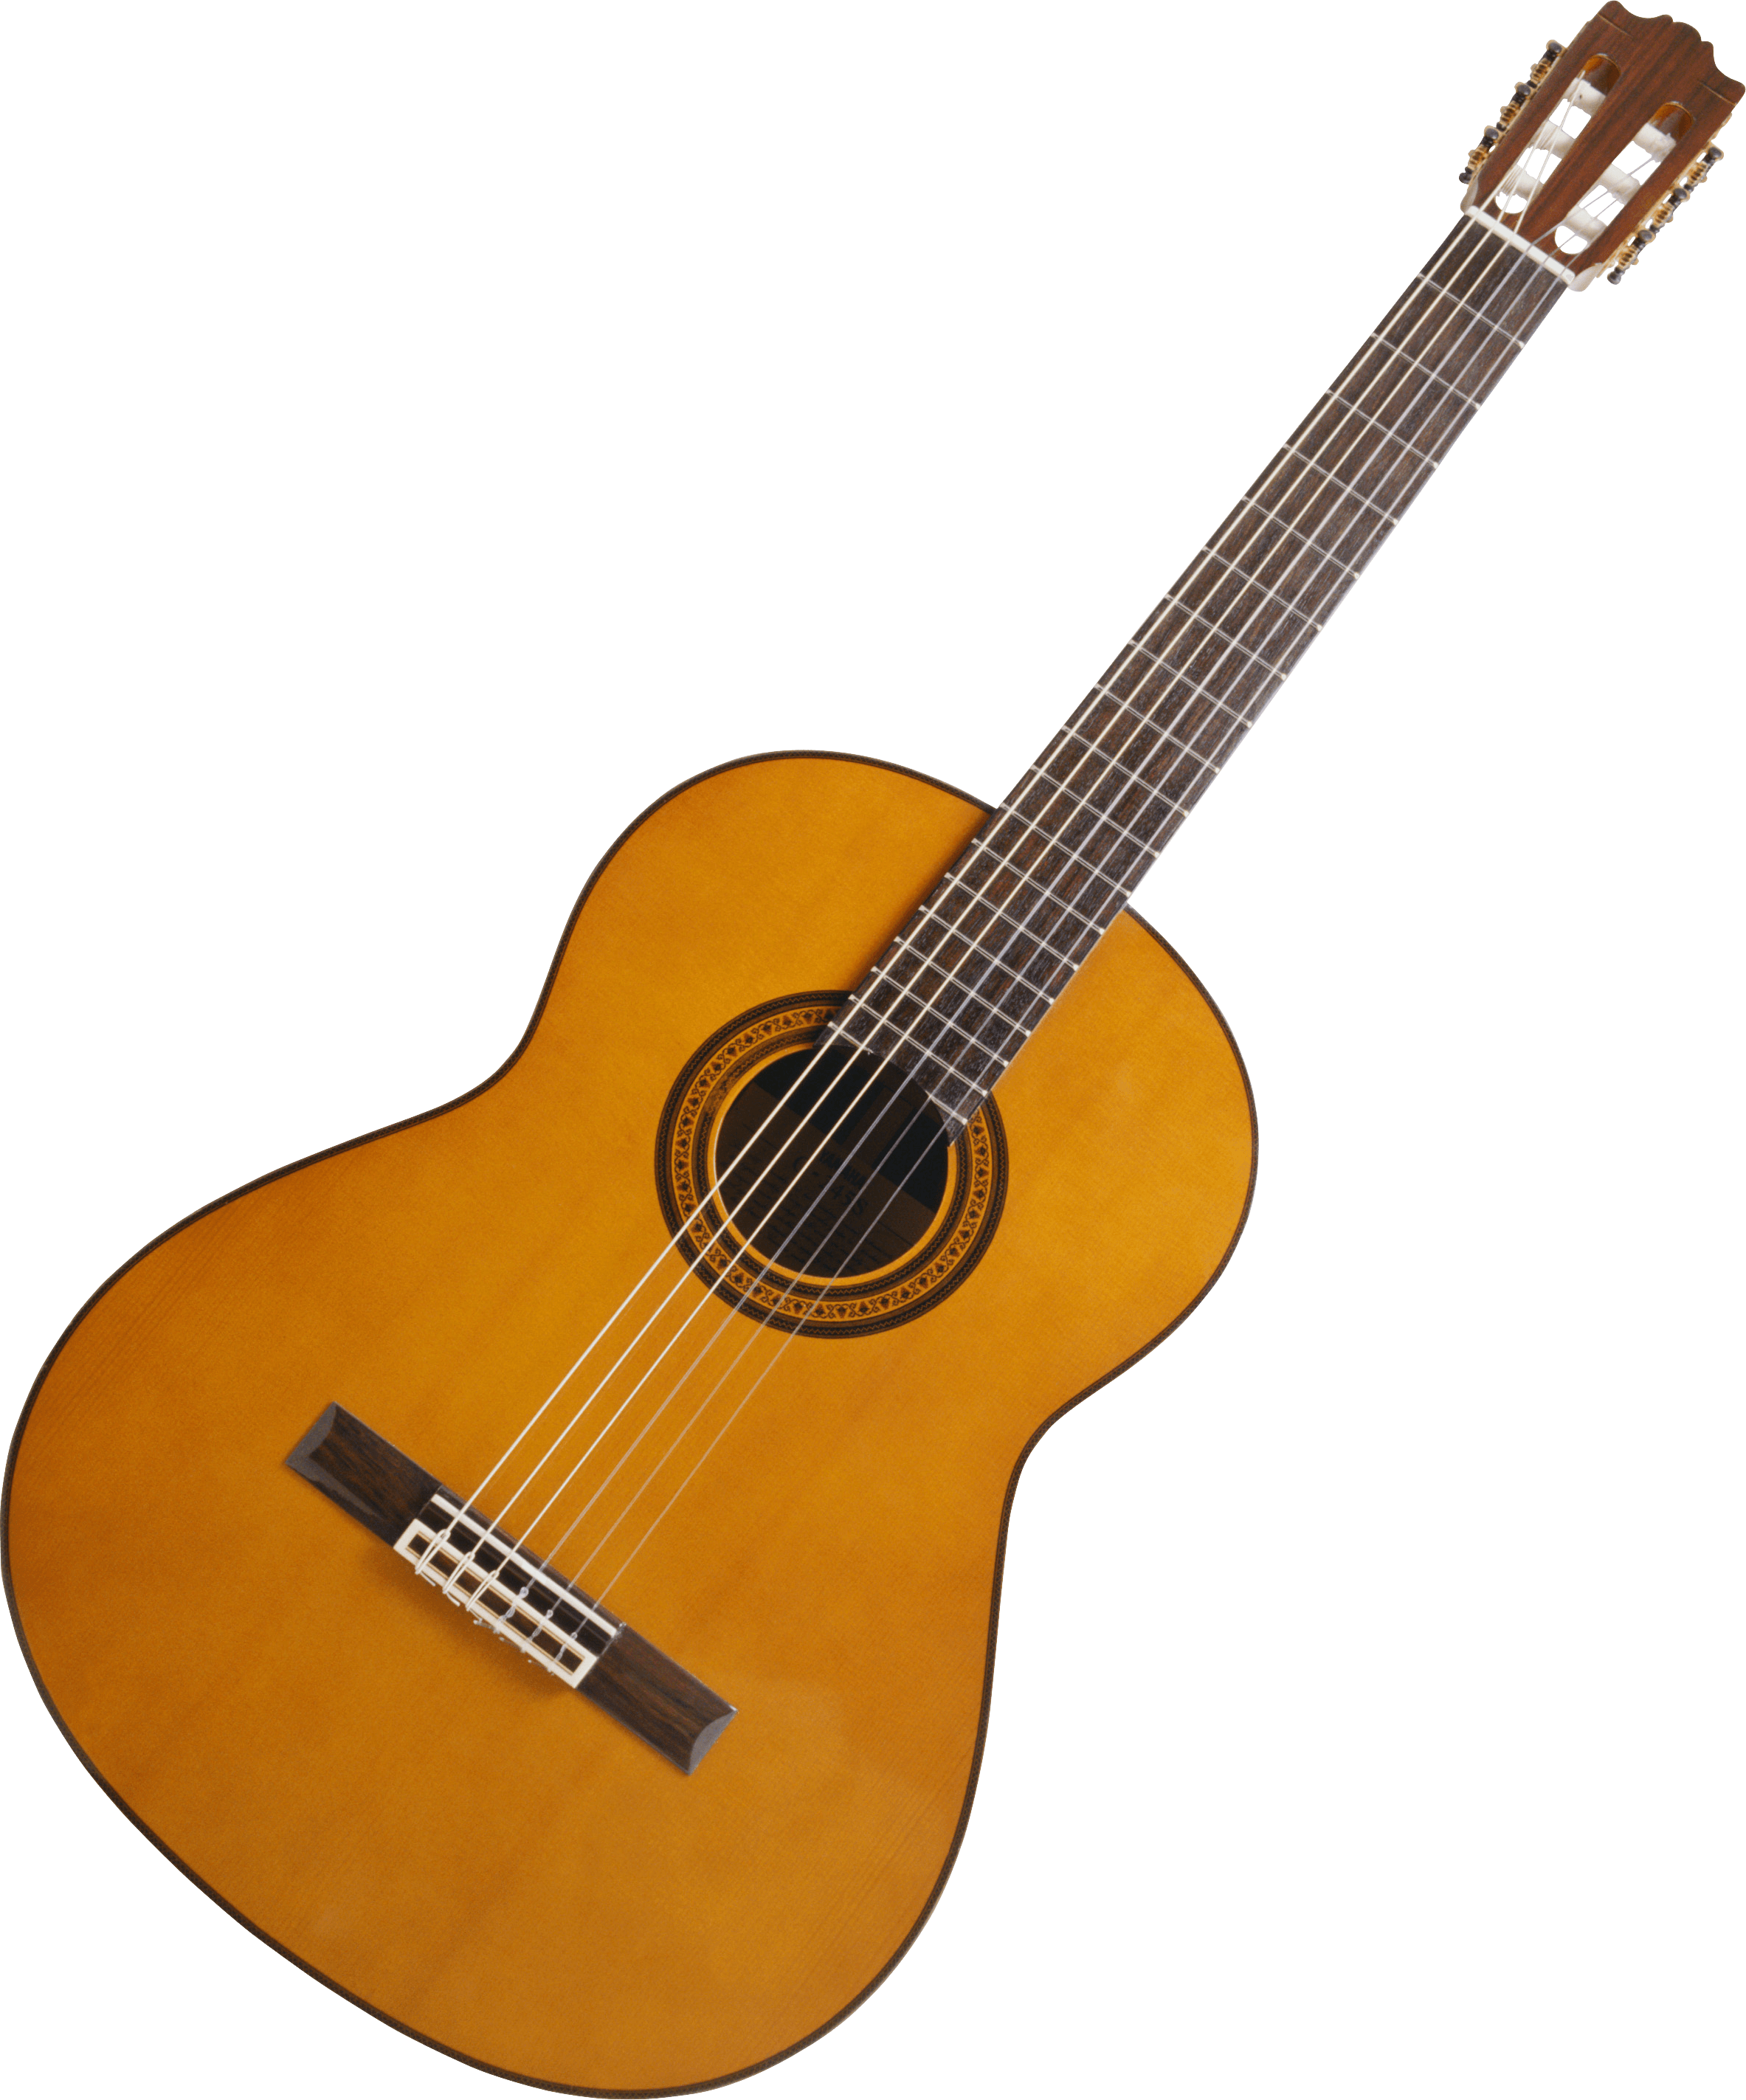 Acoustic Wood Guitar Transparent Images